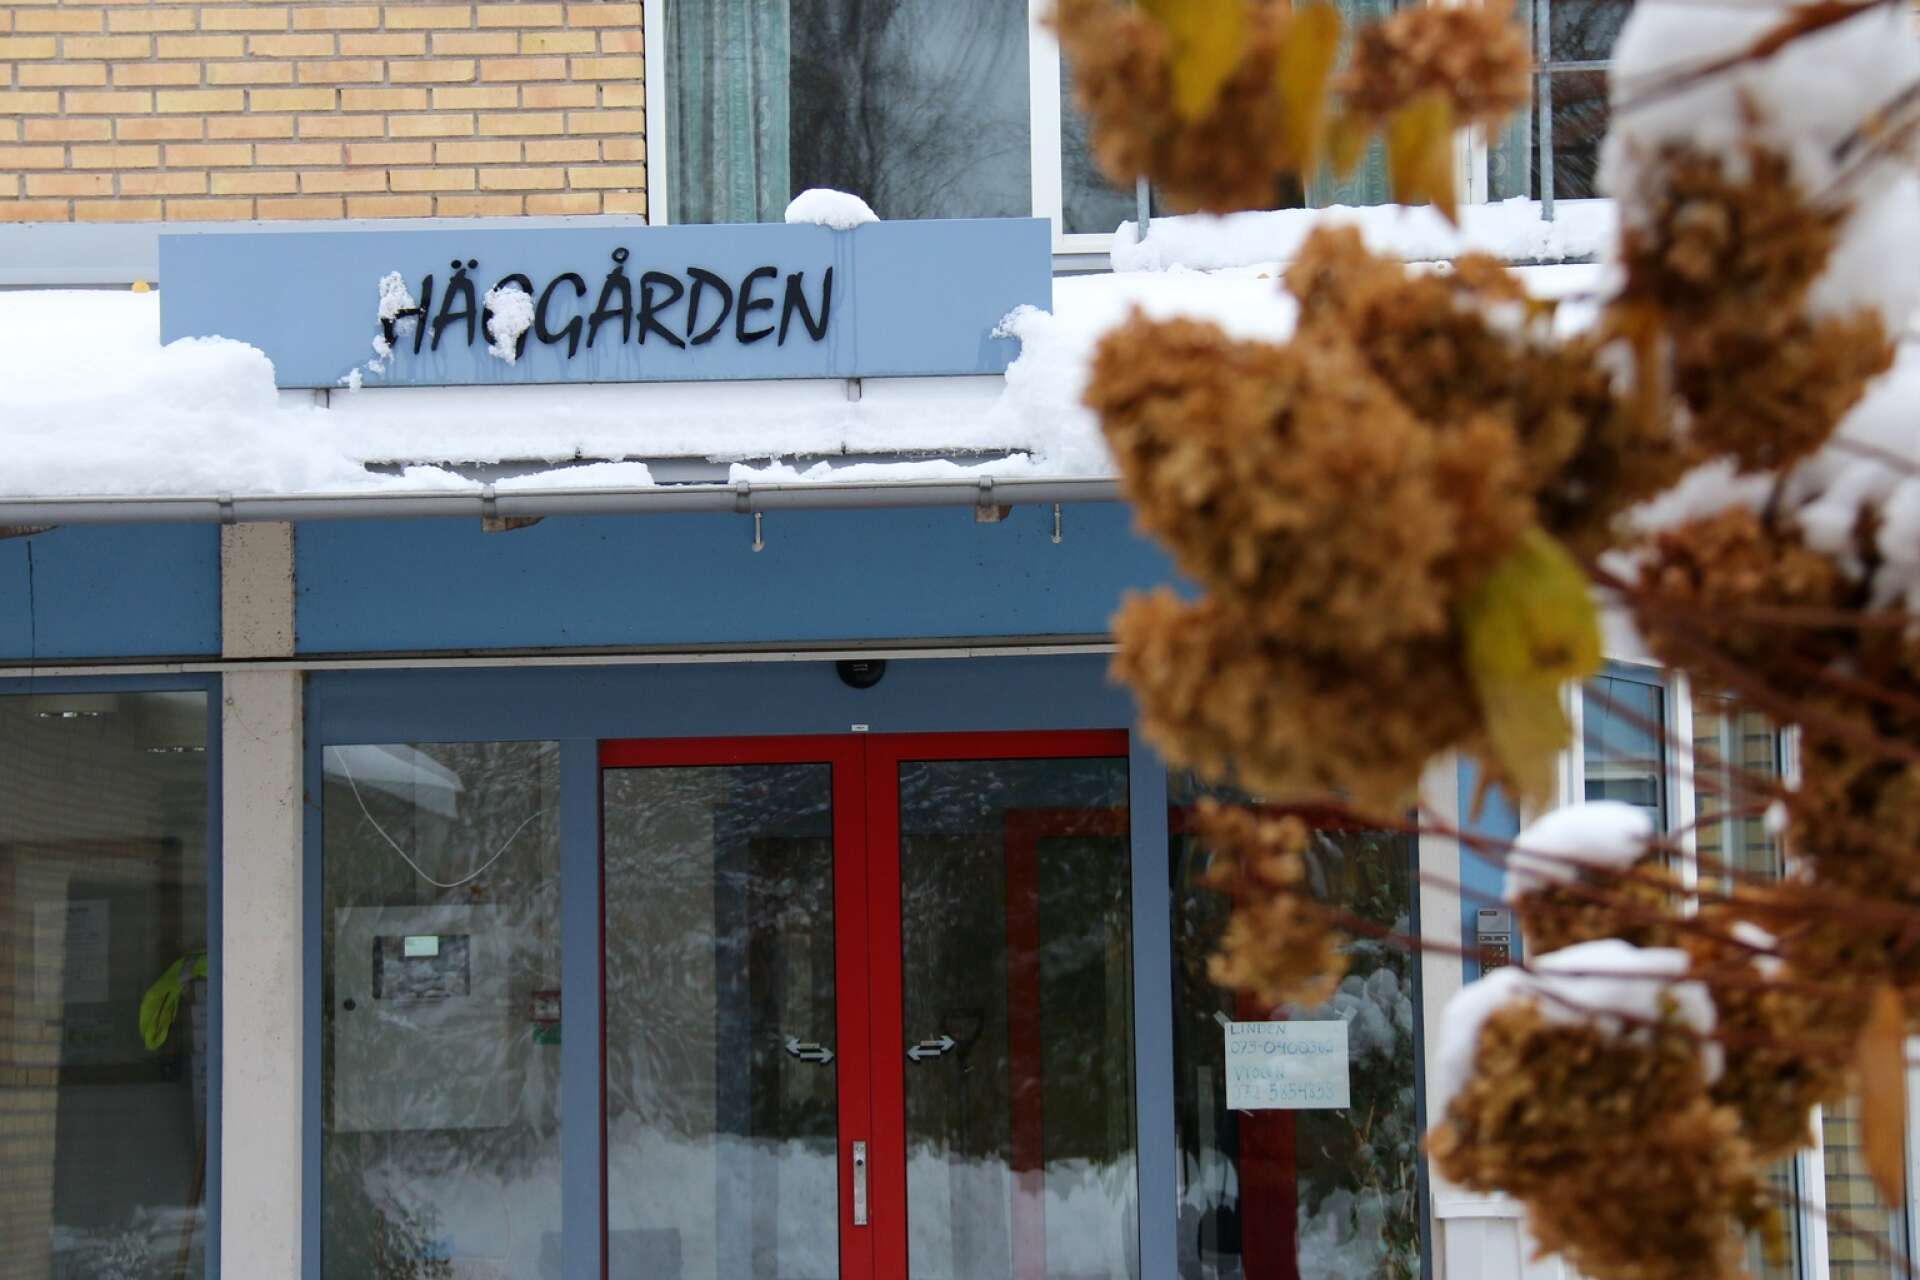 Turerna kring äldreboendet Häggården i Råda har varit många under året.